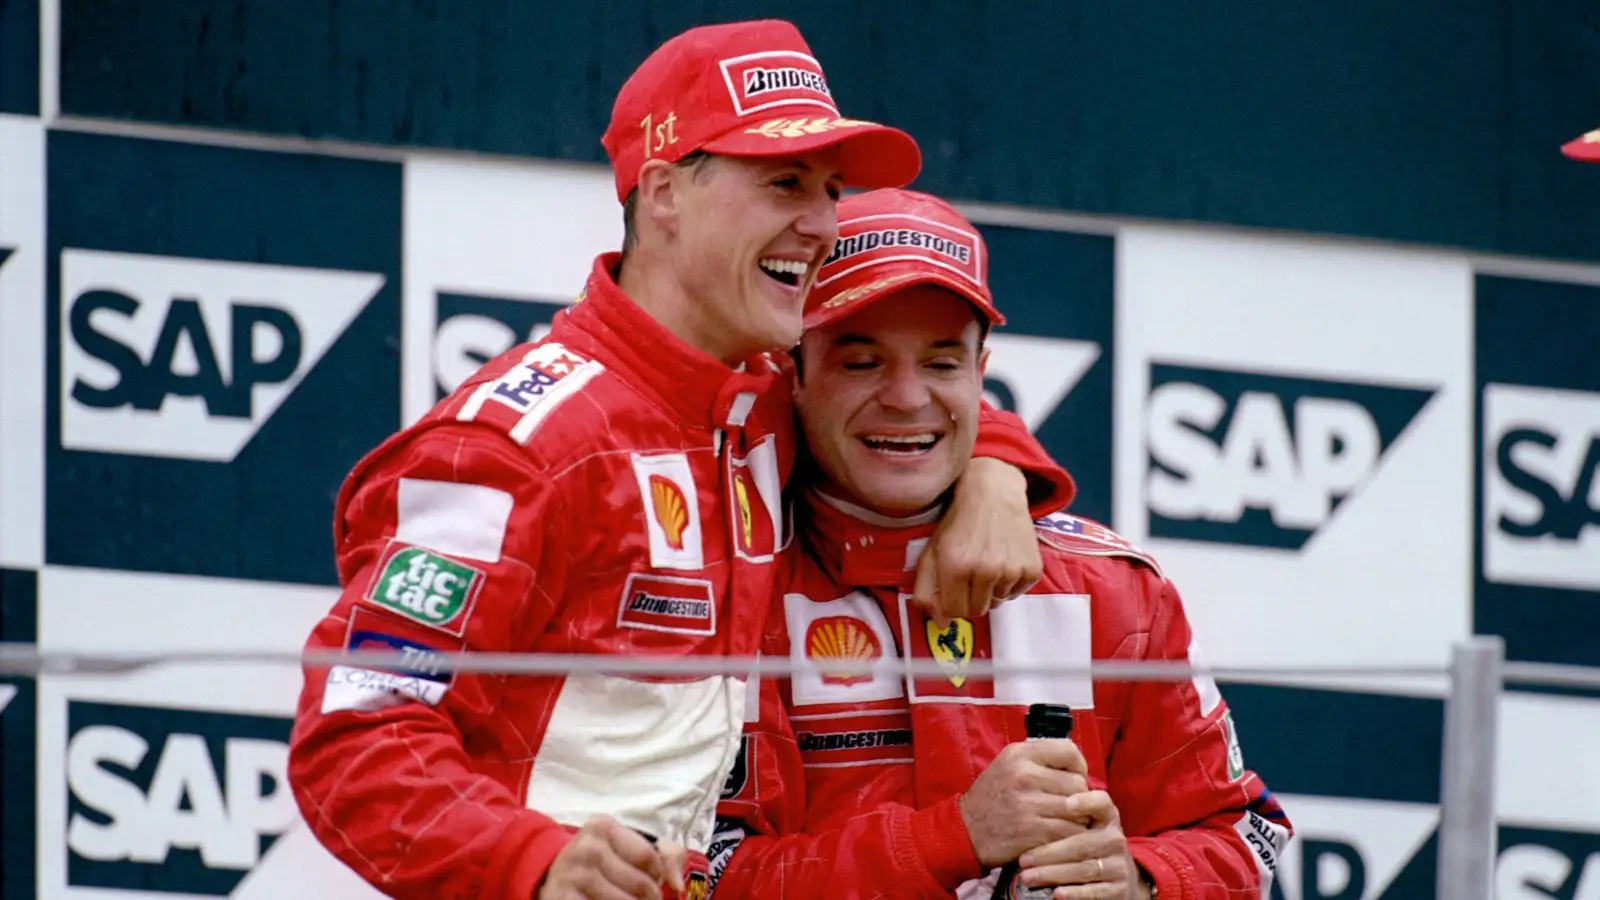 Michael Schumacher alongside Rubens Barrichello.